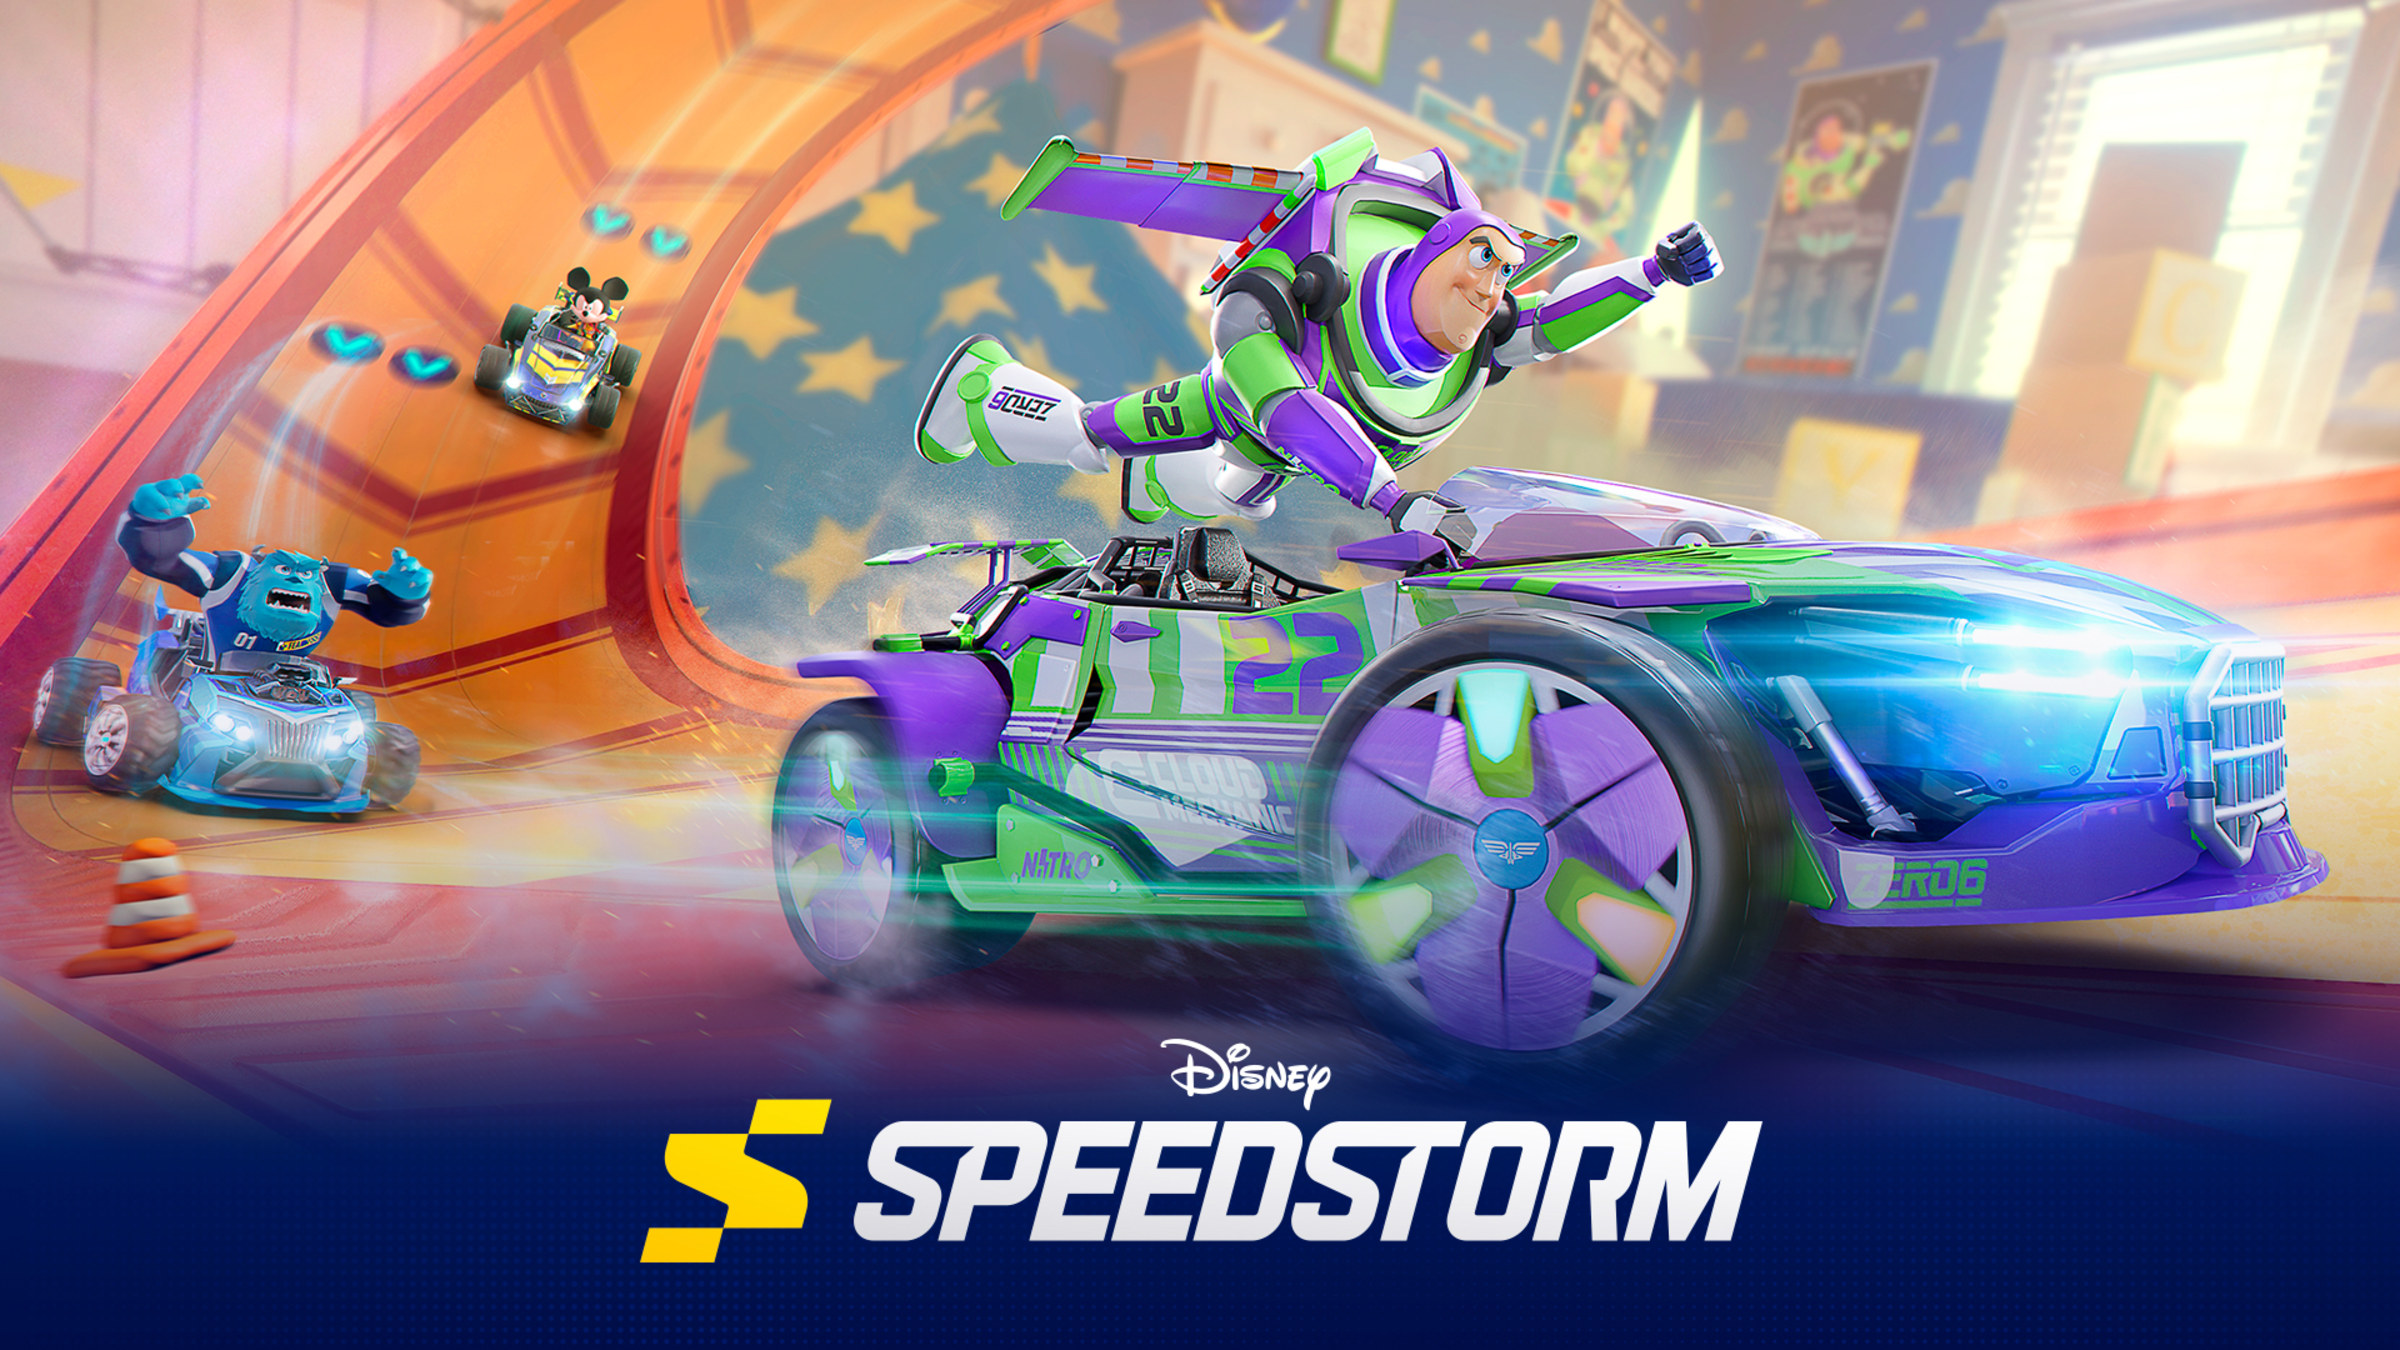 Disney Speedstorm para Nintendo Switch - Site Oficial da Nintendo